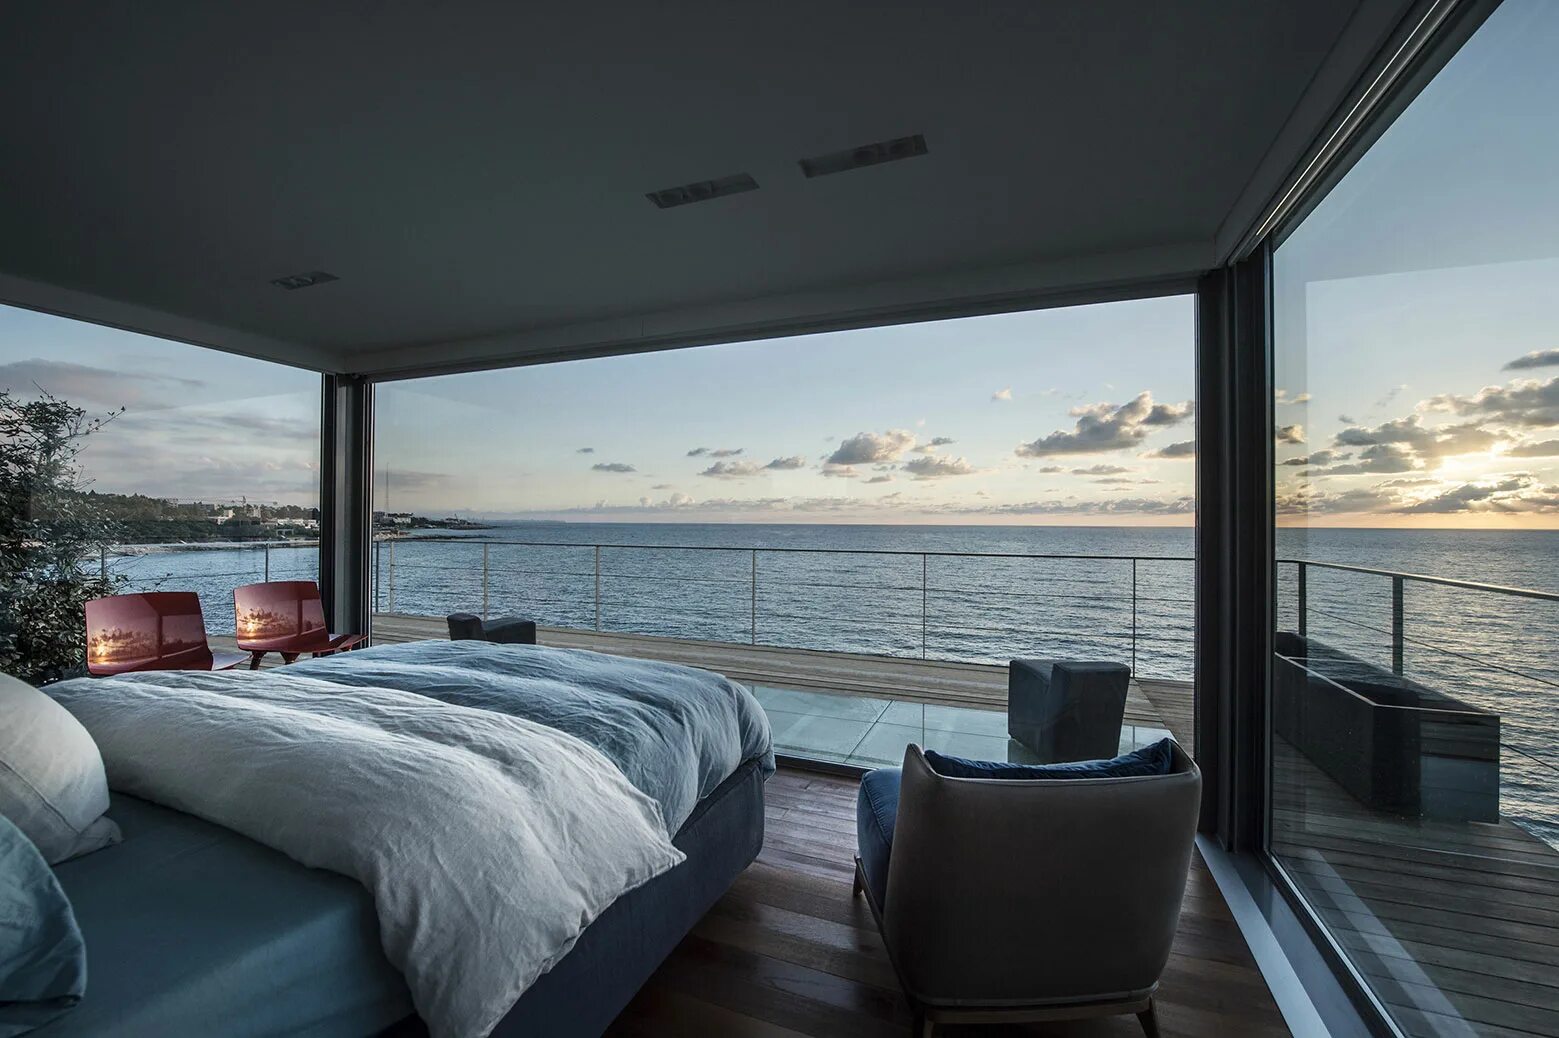 Скай Ривер панорамные окна. Вилла с панорамными окнами с видом на океан. Дом на берегу моря. Домик у океана.